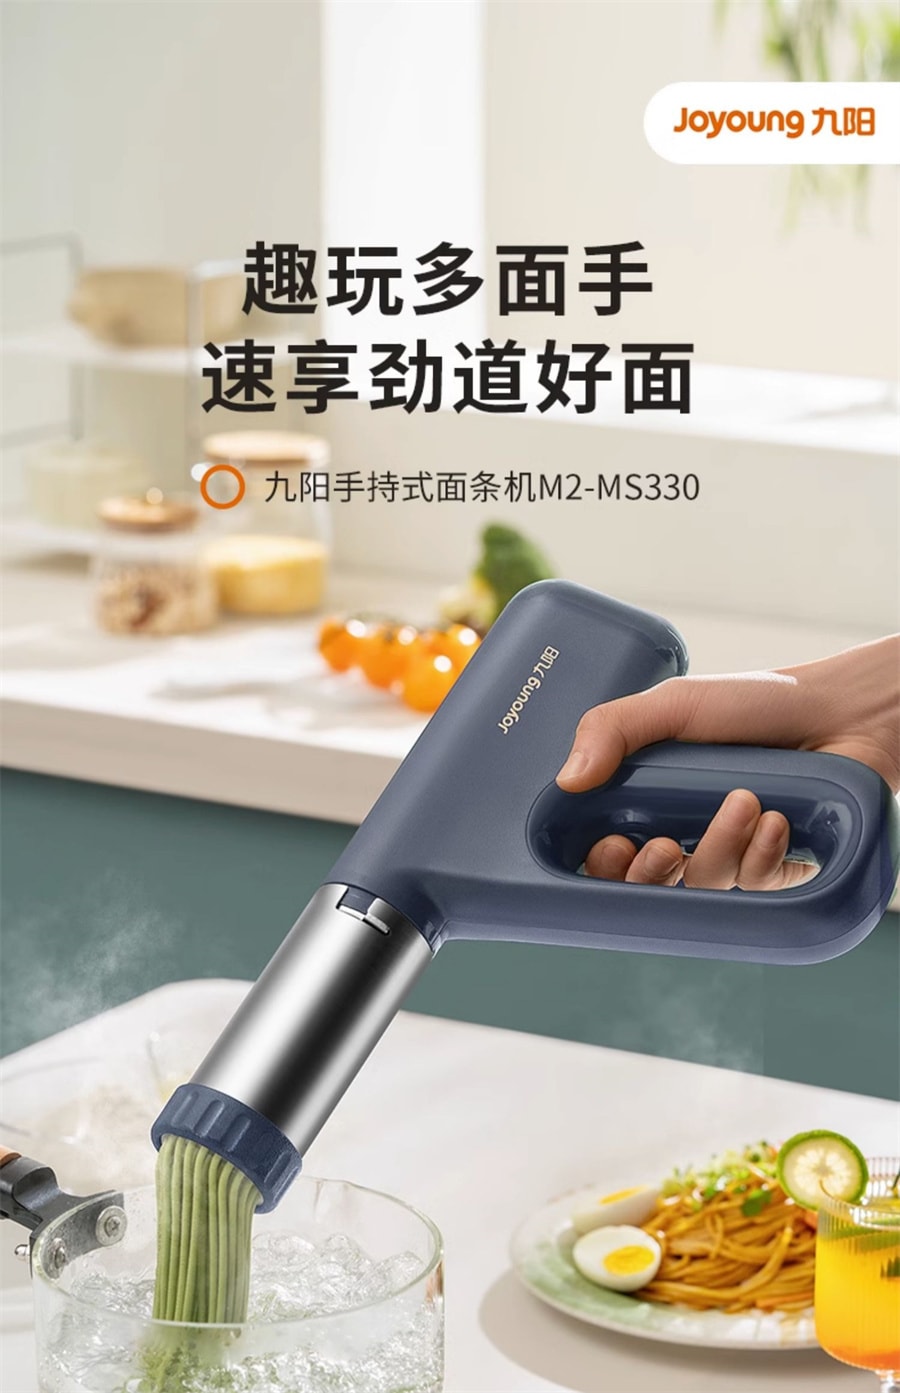 自動製麺機 - キッチン家電